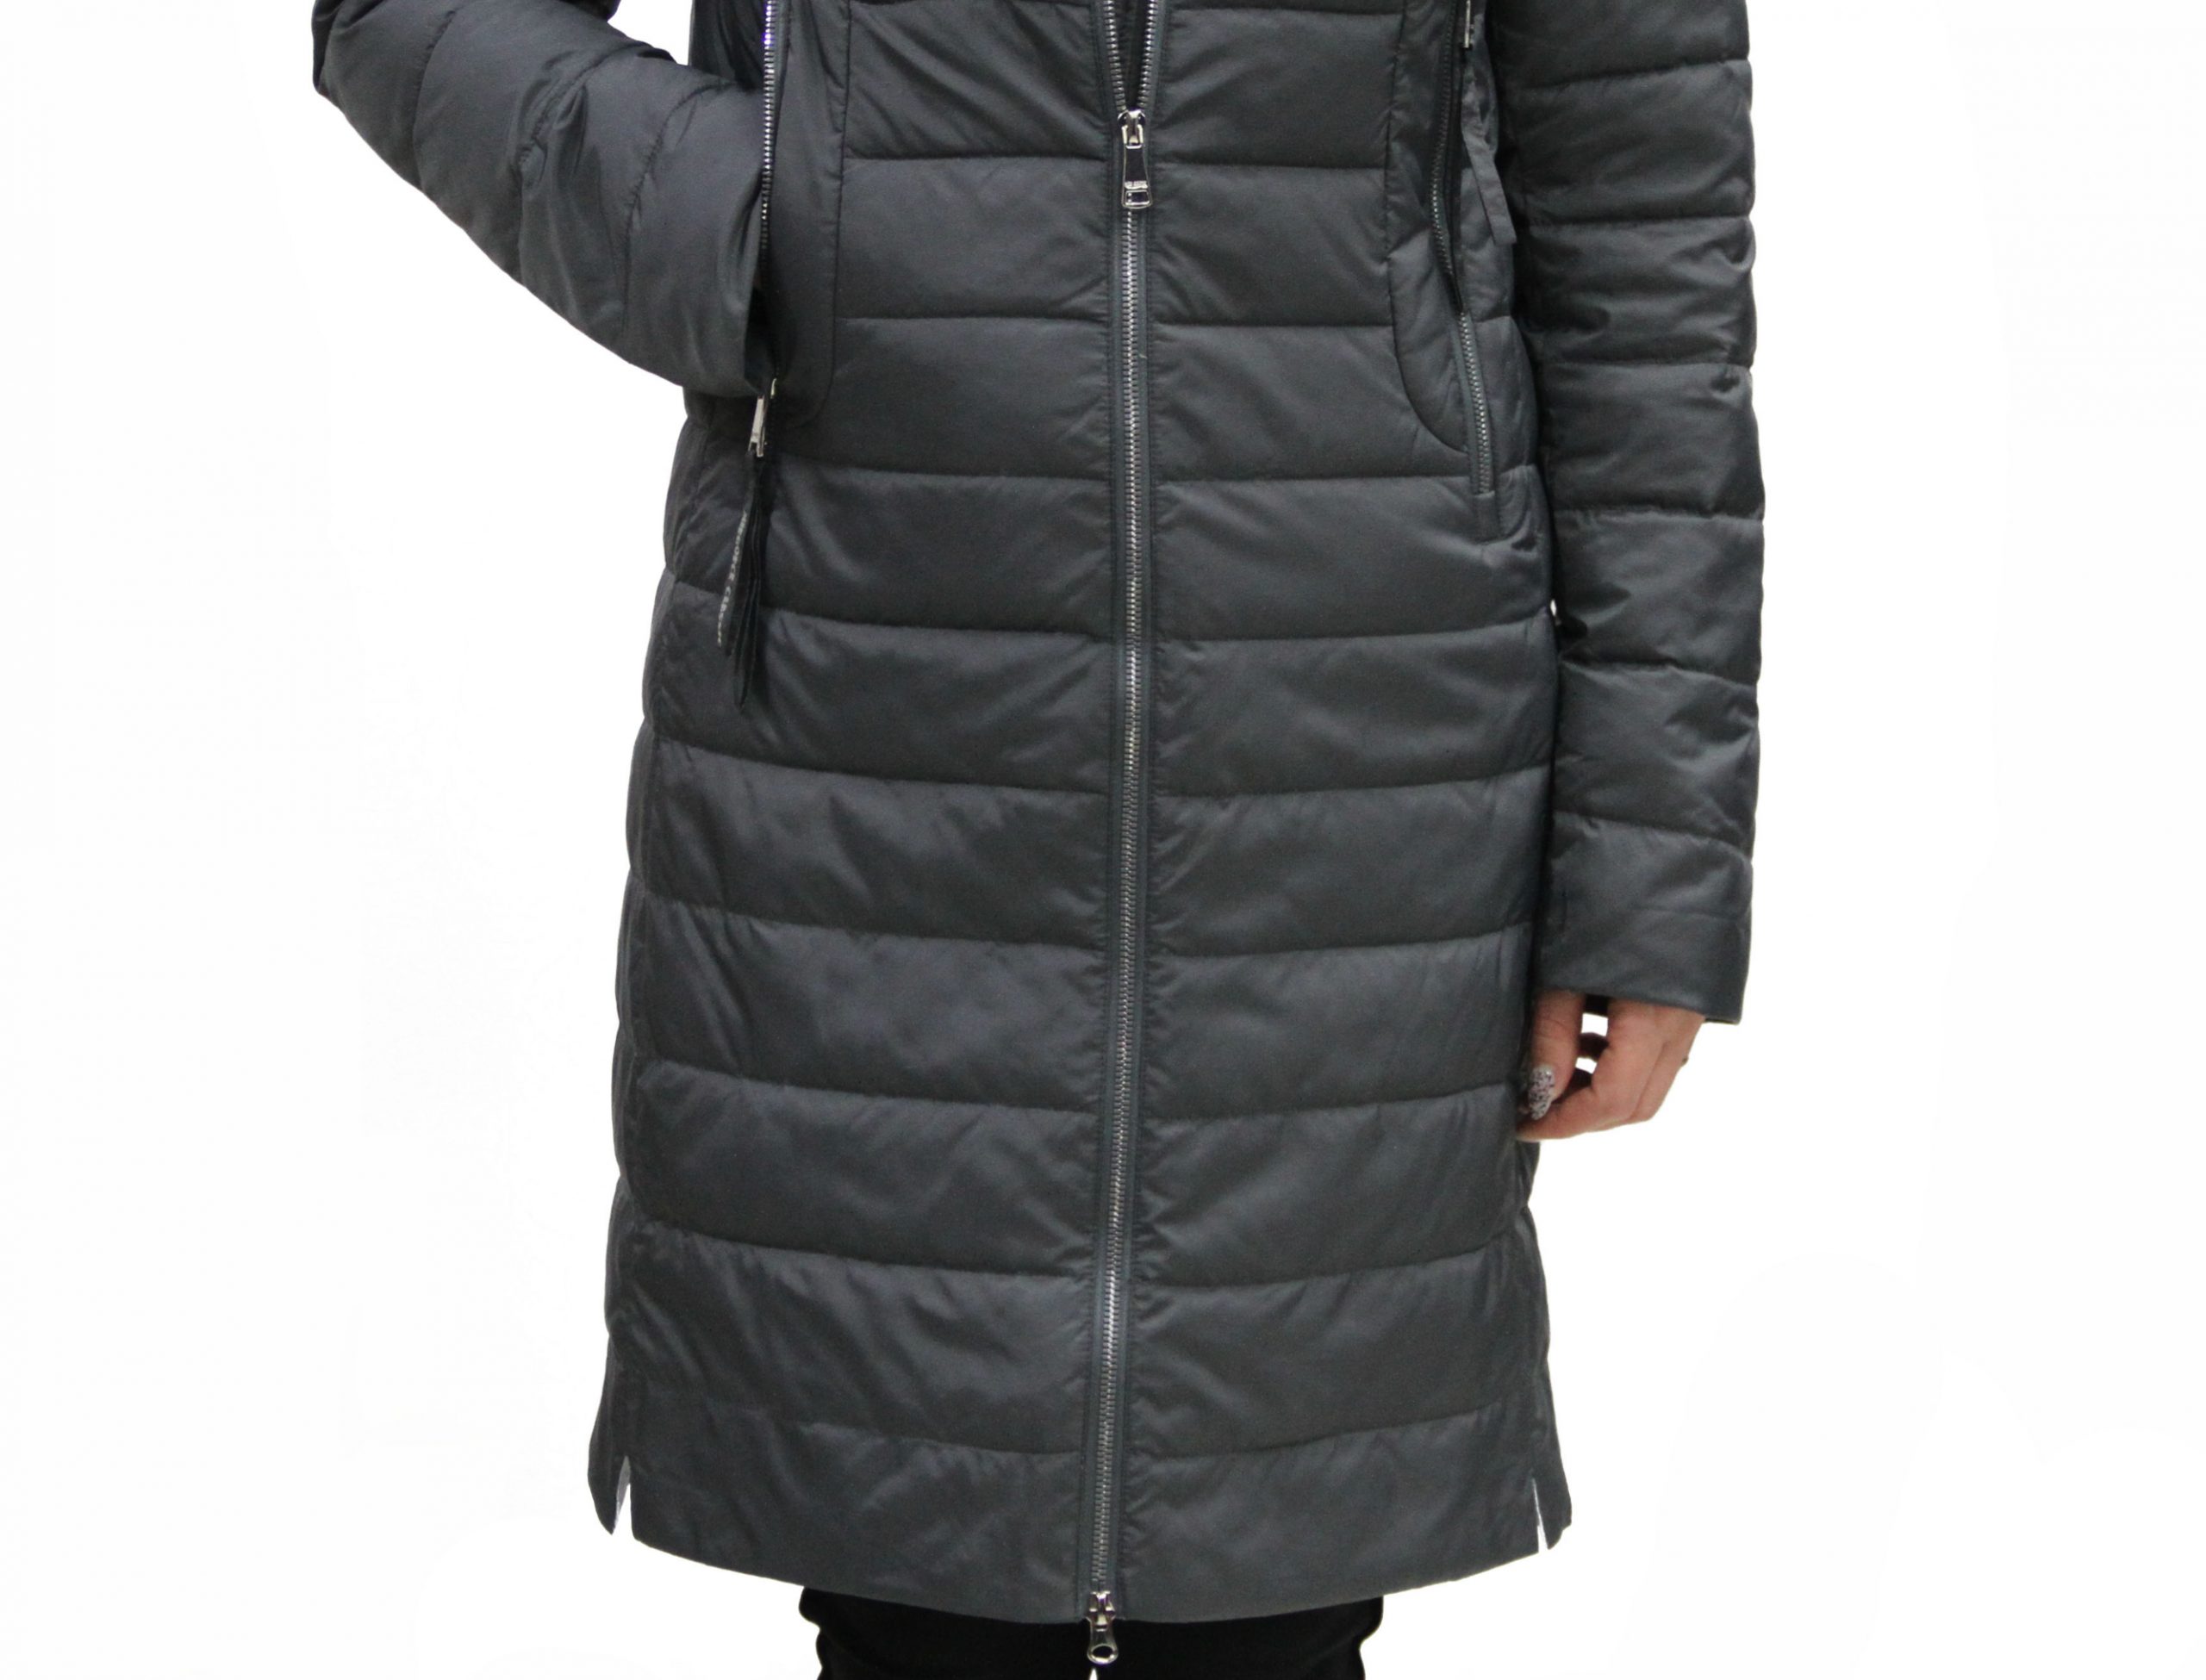 Демисезонная женская куртка (MIEGOFCE)